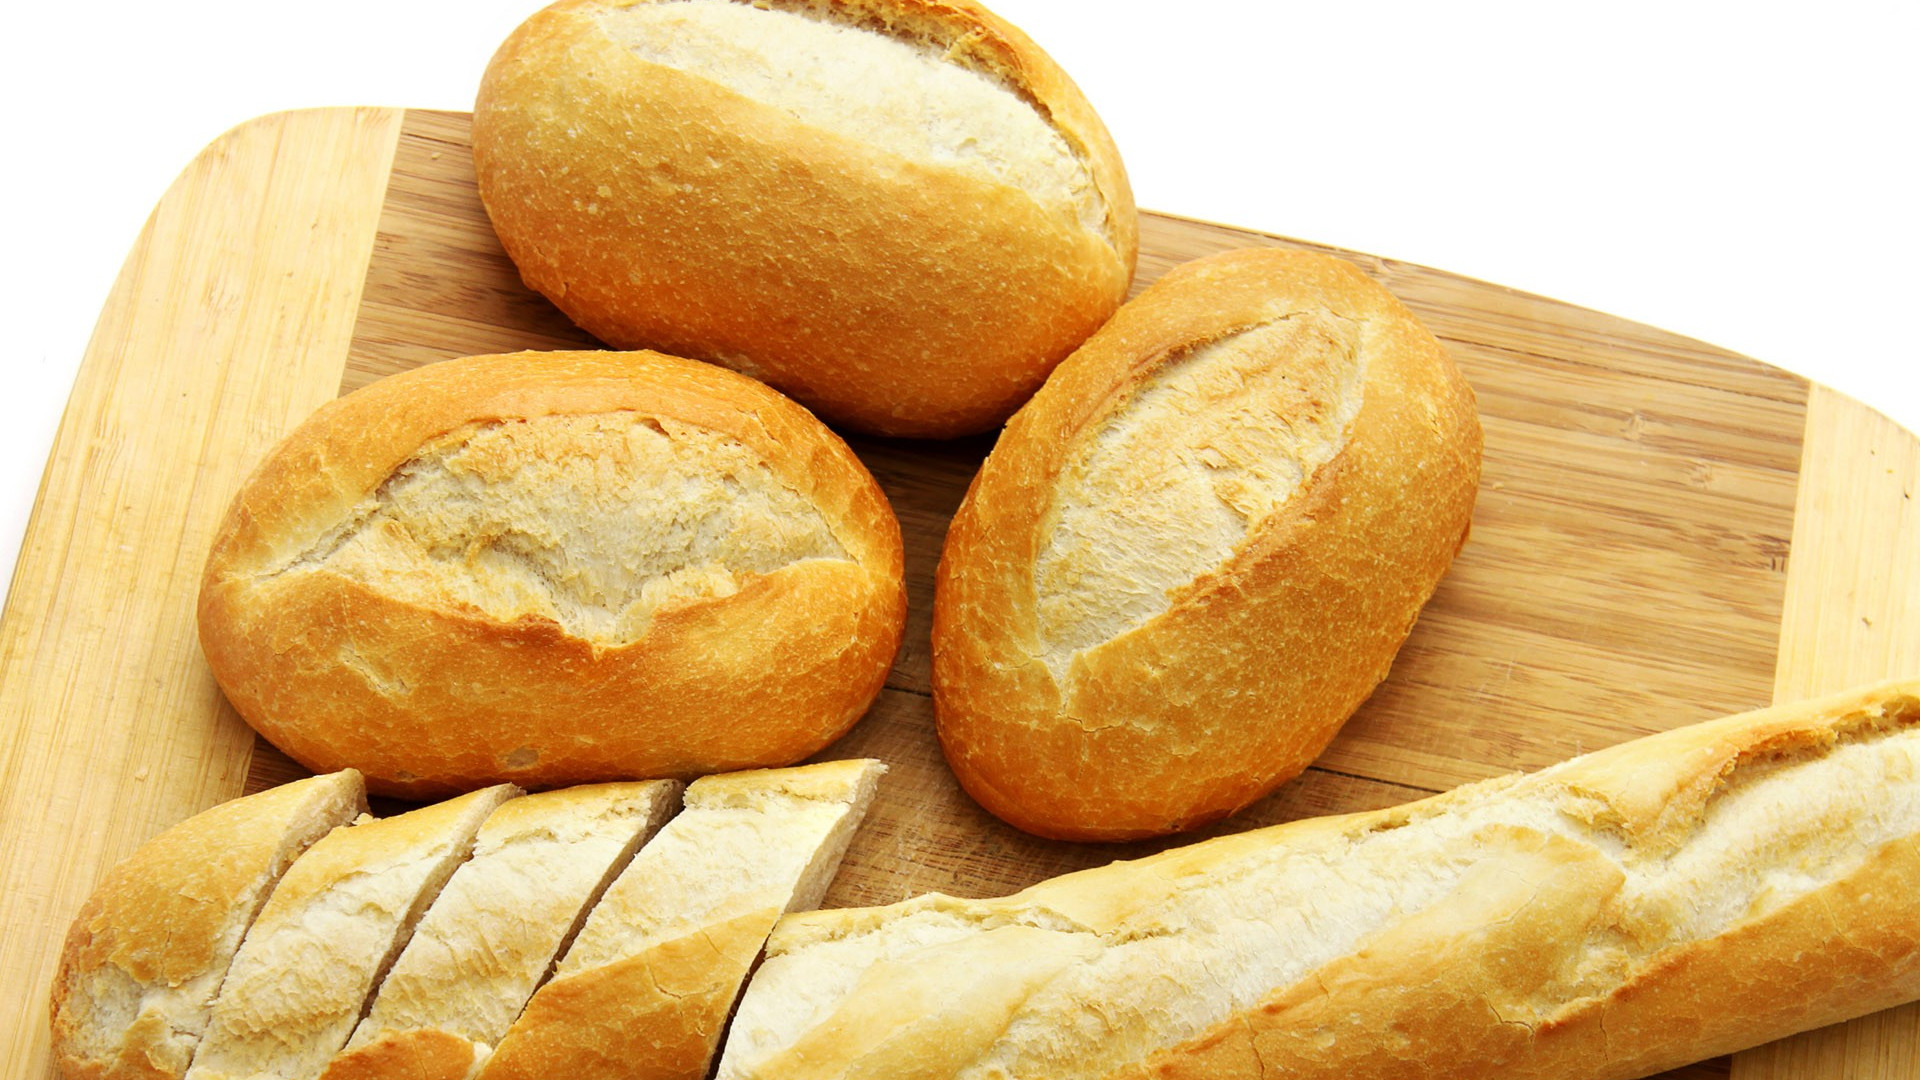   Bạn nên tránh các thực phẩm gây béo bụng như bánh mì, bánh, kẹo  